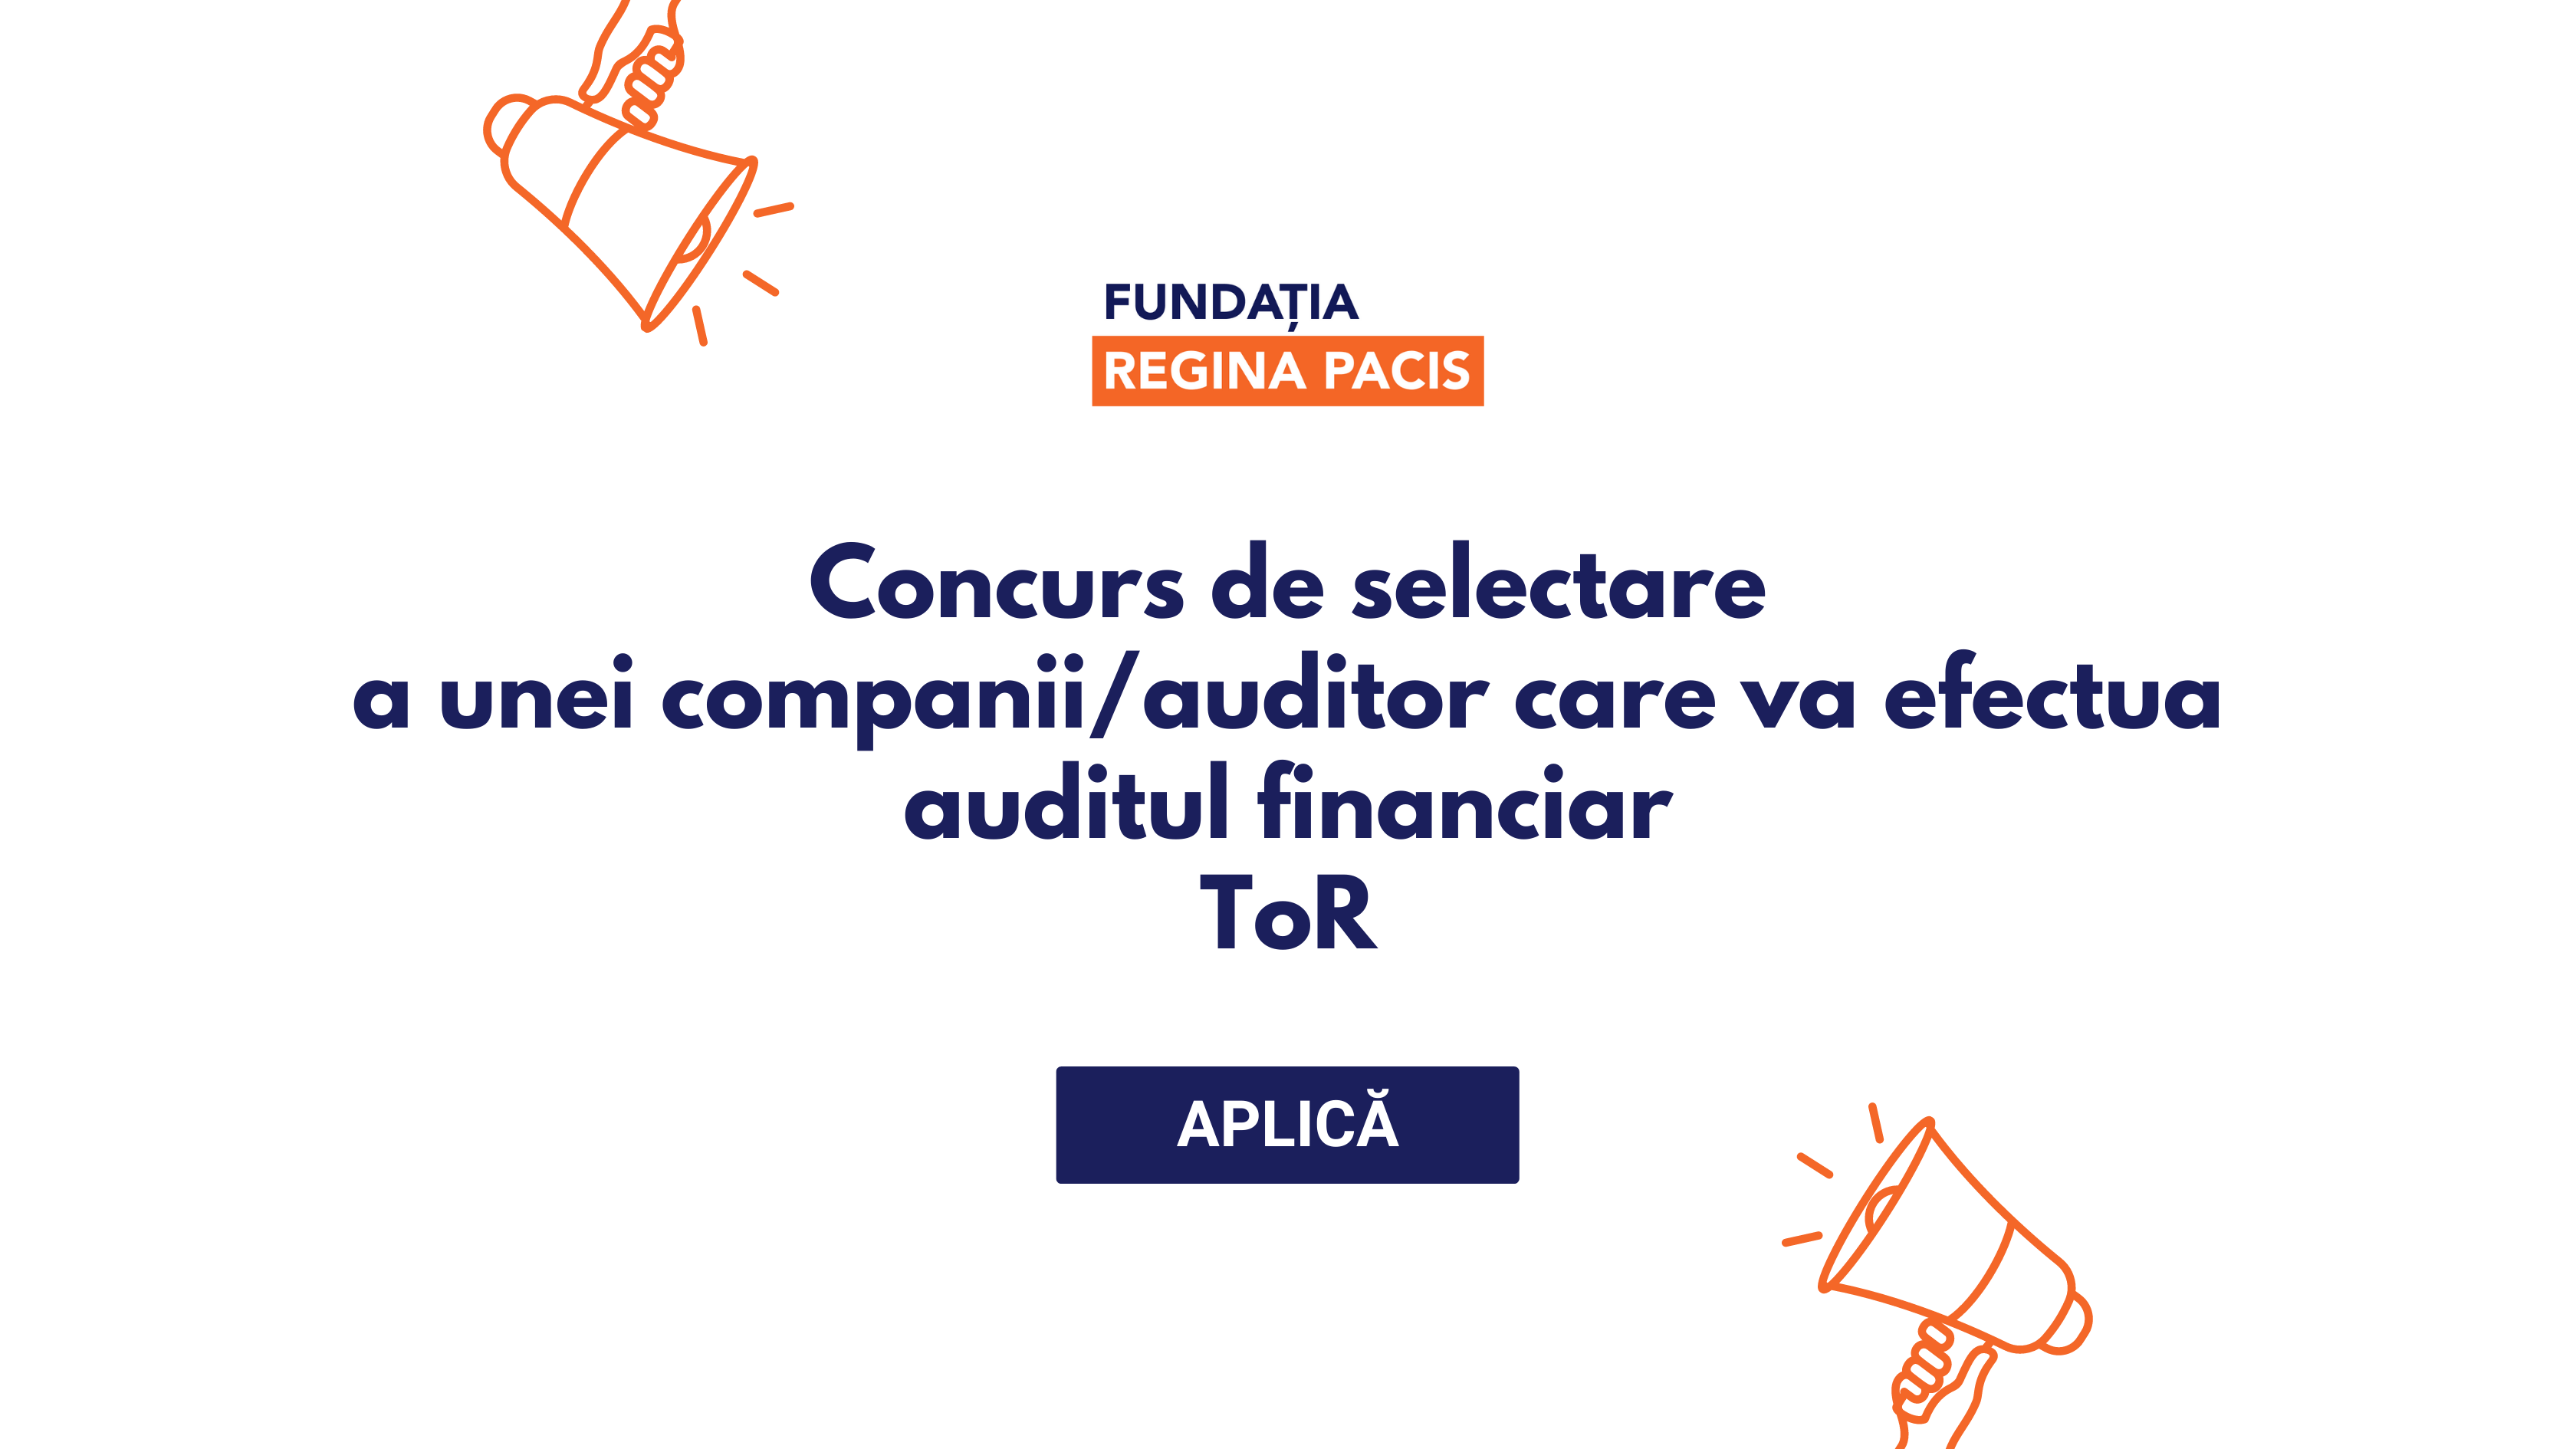 Concurs de selectare a unei companii/auditor care va efectua auditul financiar, ToR